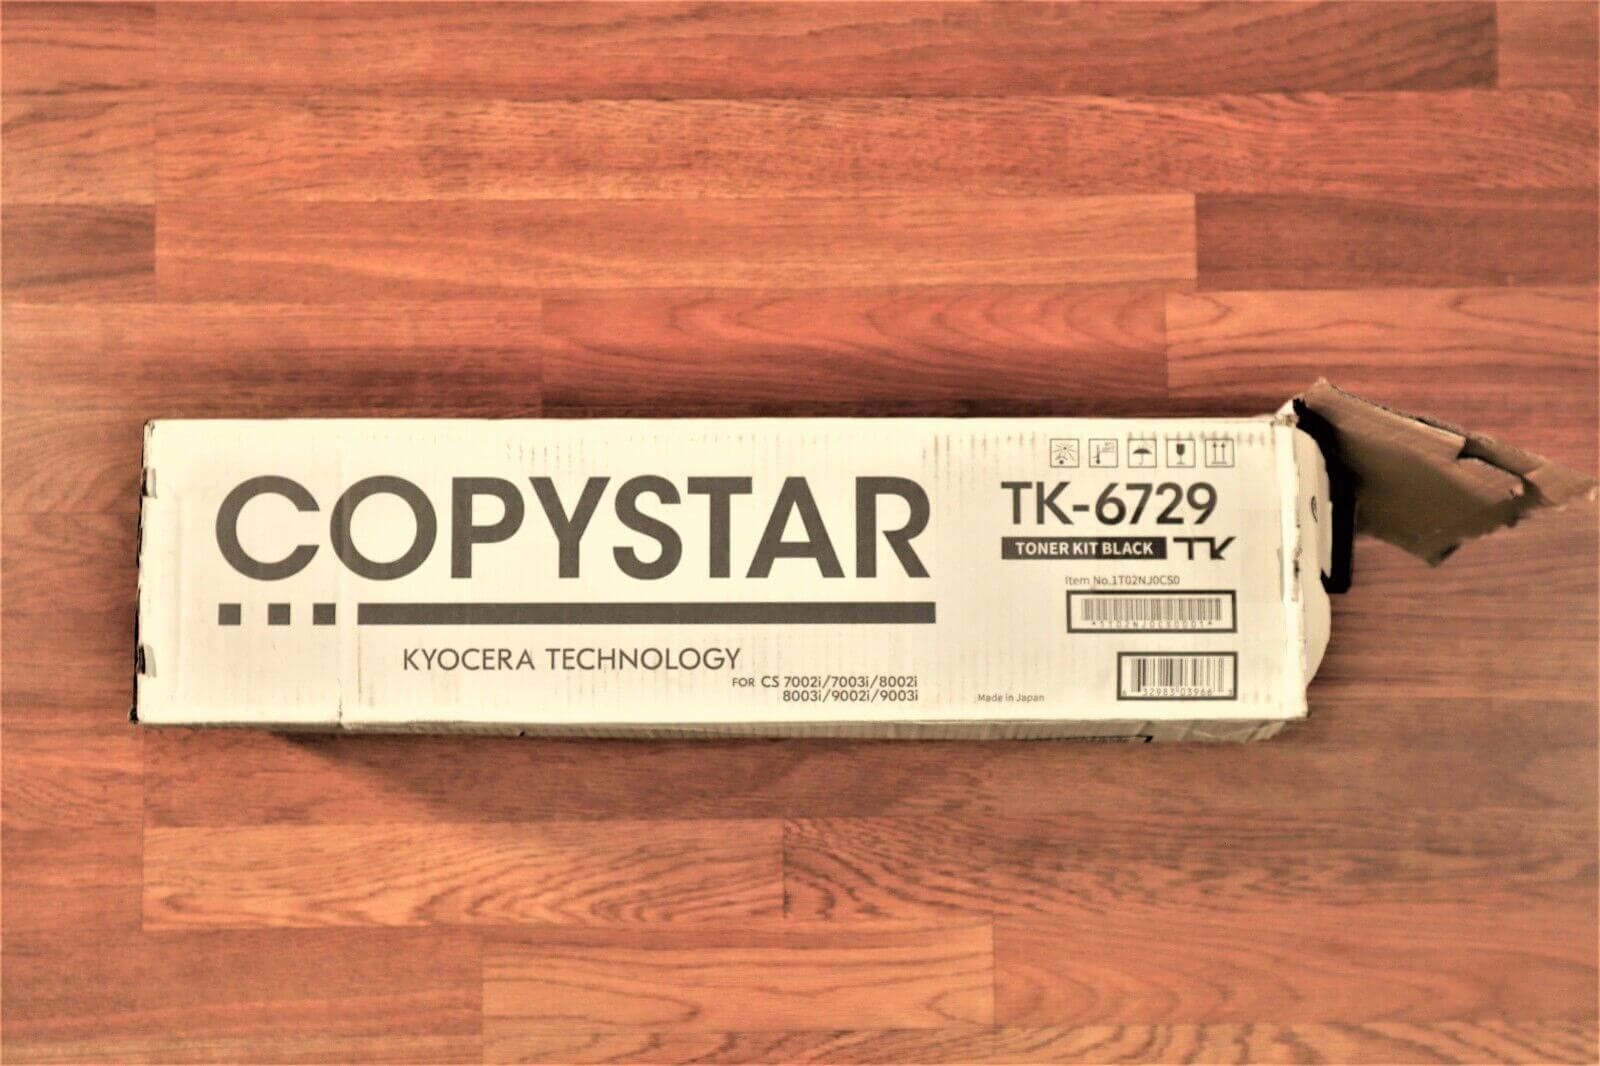 Open Kyocera Copystar TK-6729 Toner Black CS7002i/7003i/8002i/8003i/9002i/9003i - copier-clearance-center